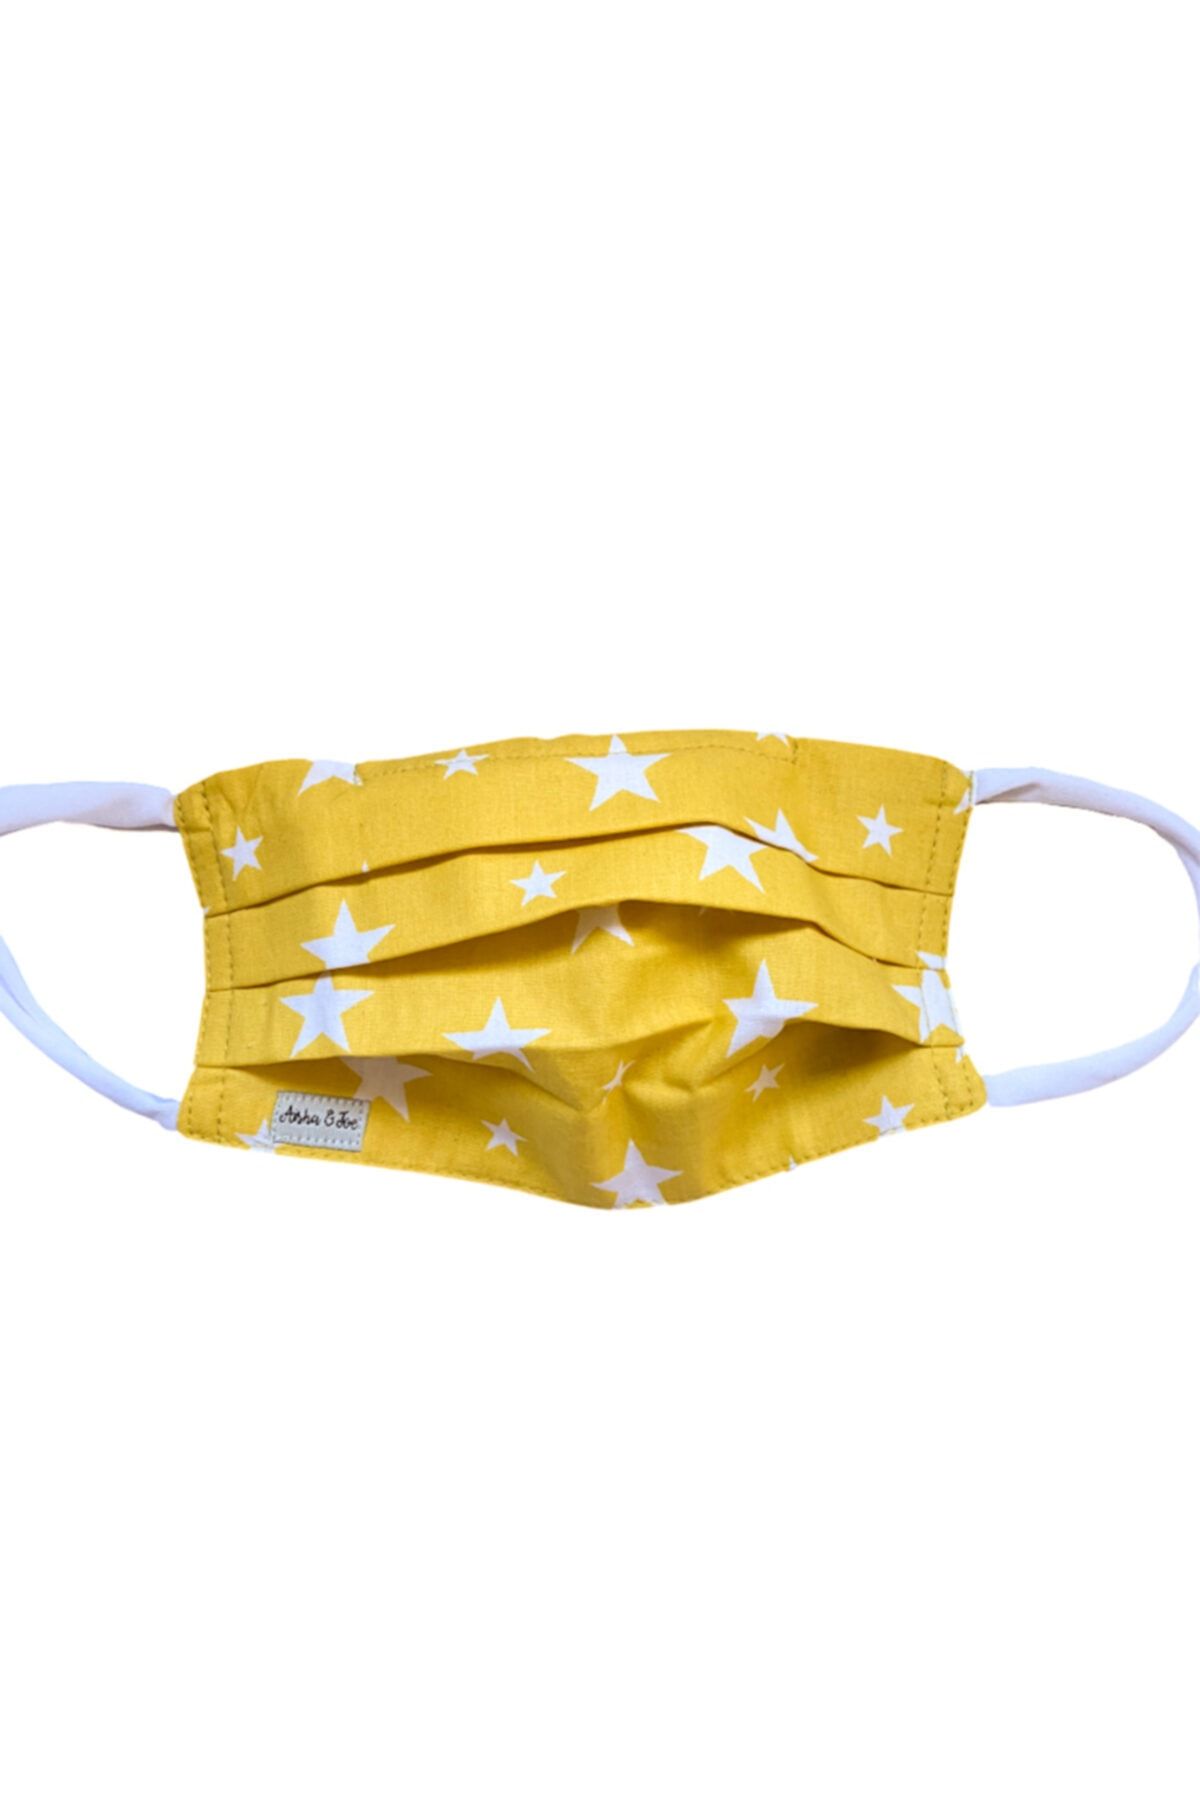 Aisha & Joe Sarı Yıldız Yıkanabilir Maske